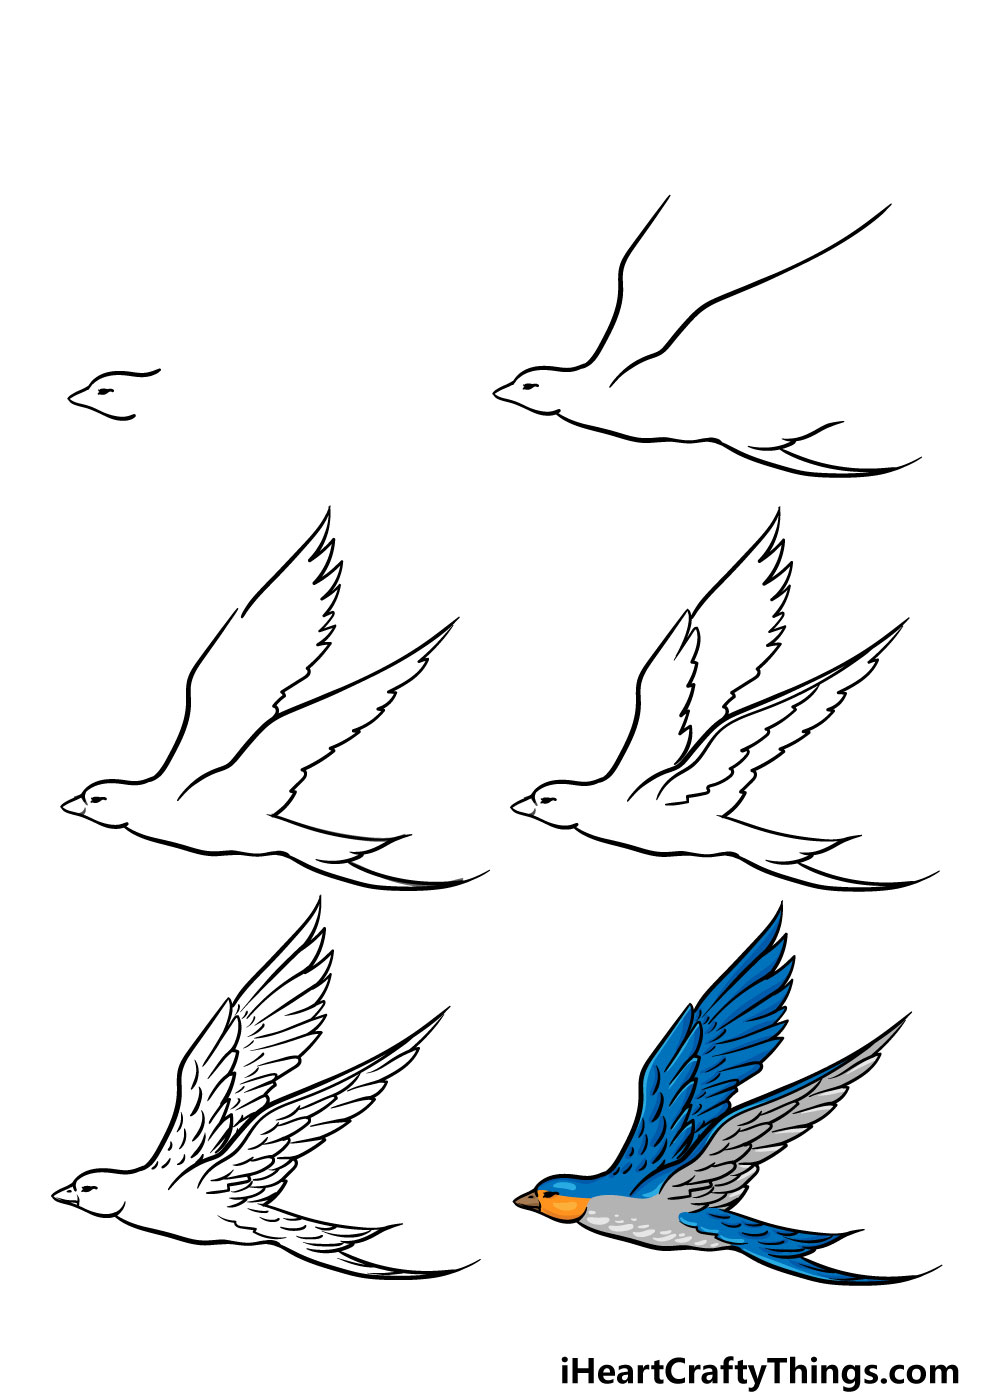 cách vẽ một con chim đang bay trong 6 bước đơn giản